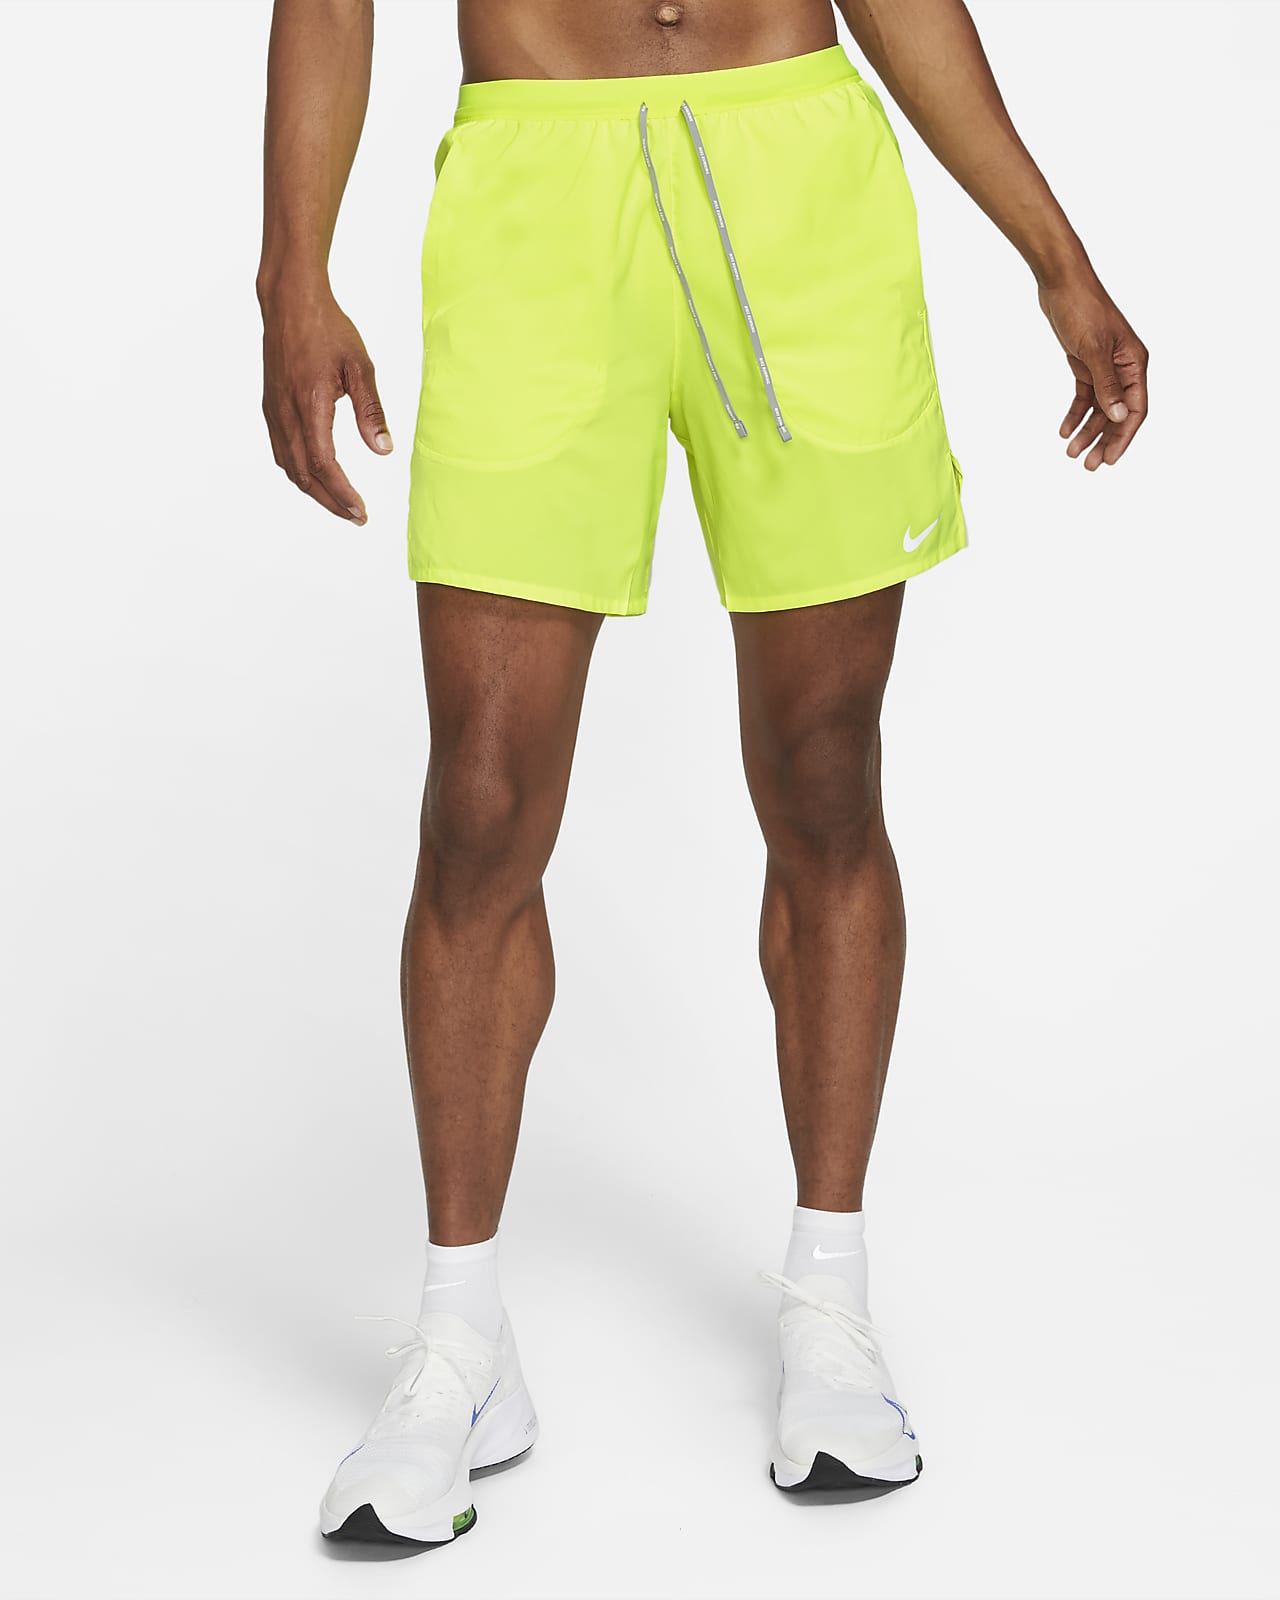 Nike Flex Stride Men's Brief Running Shorts